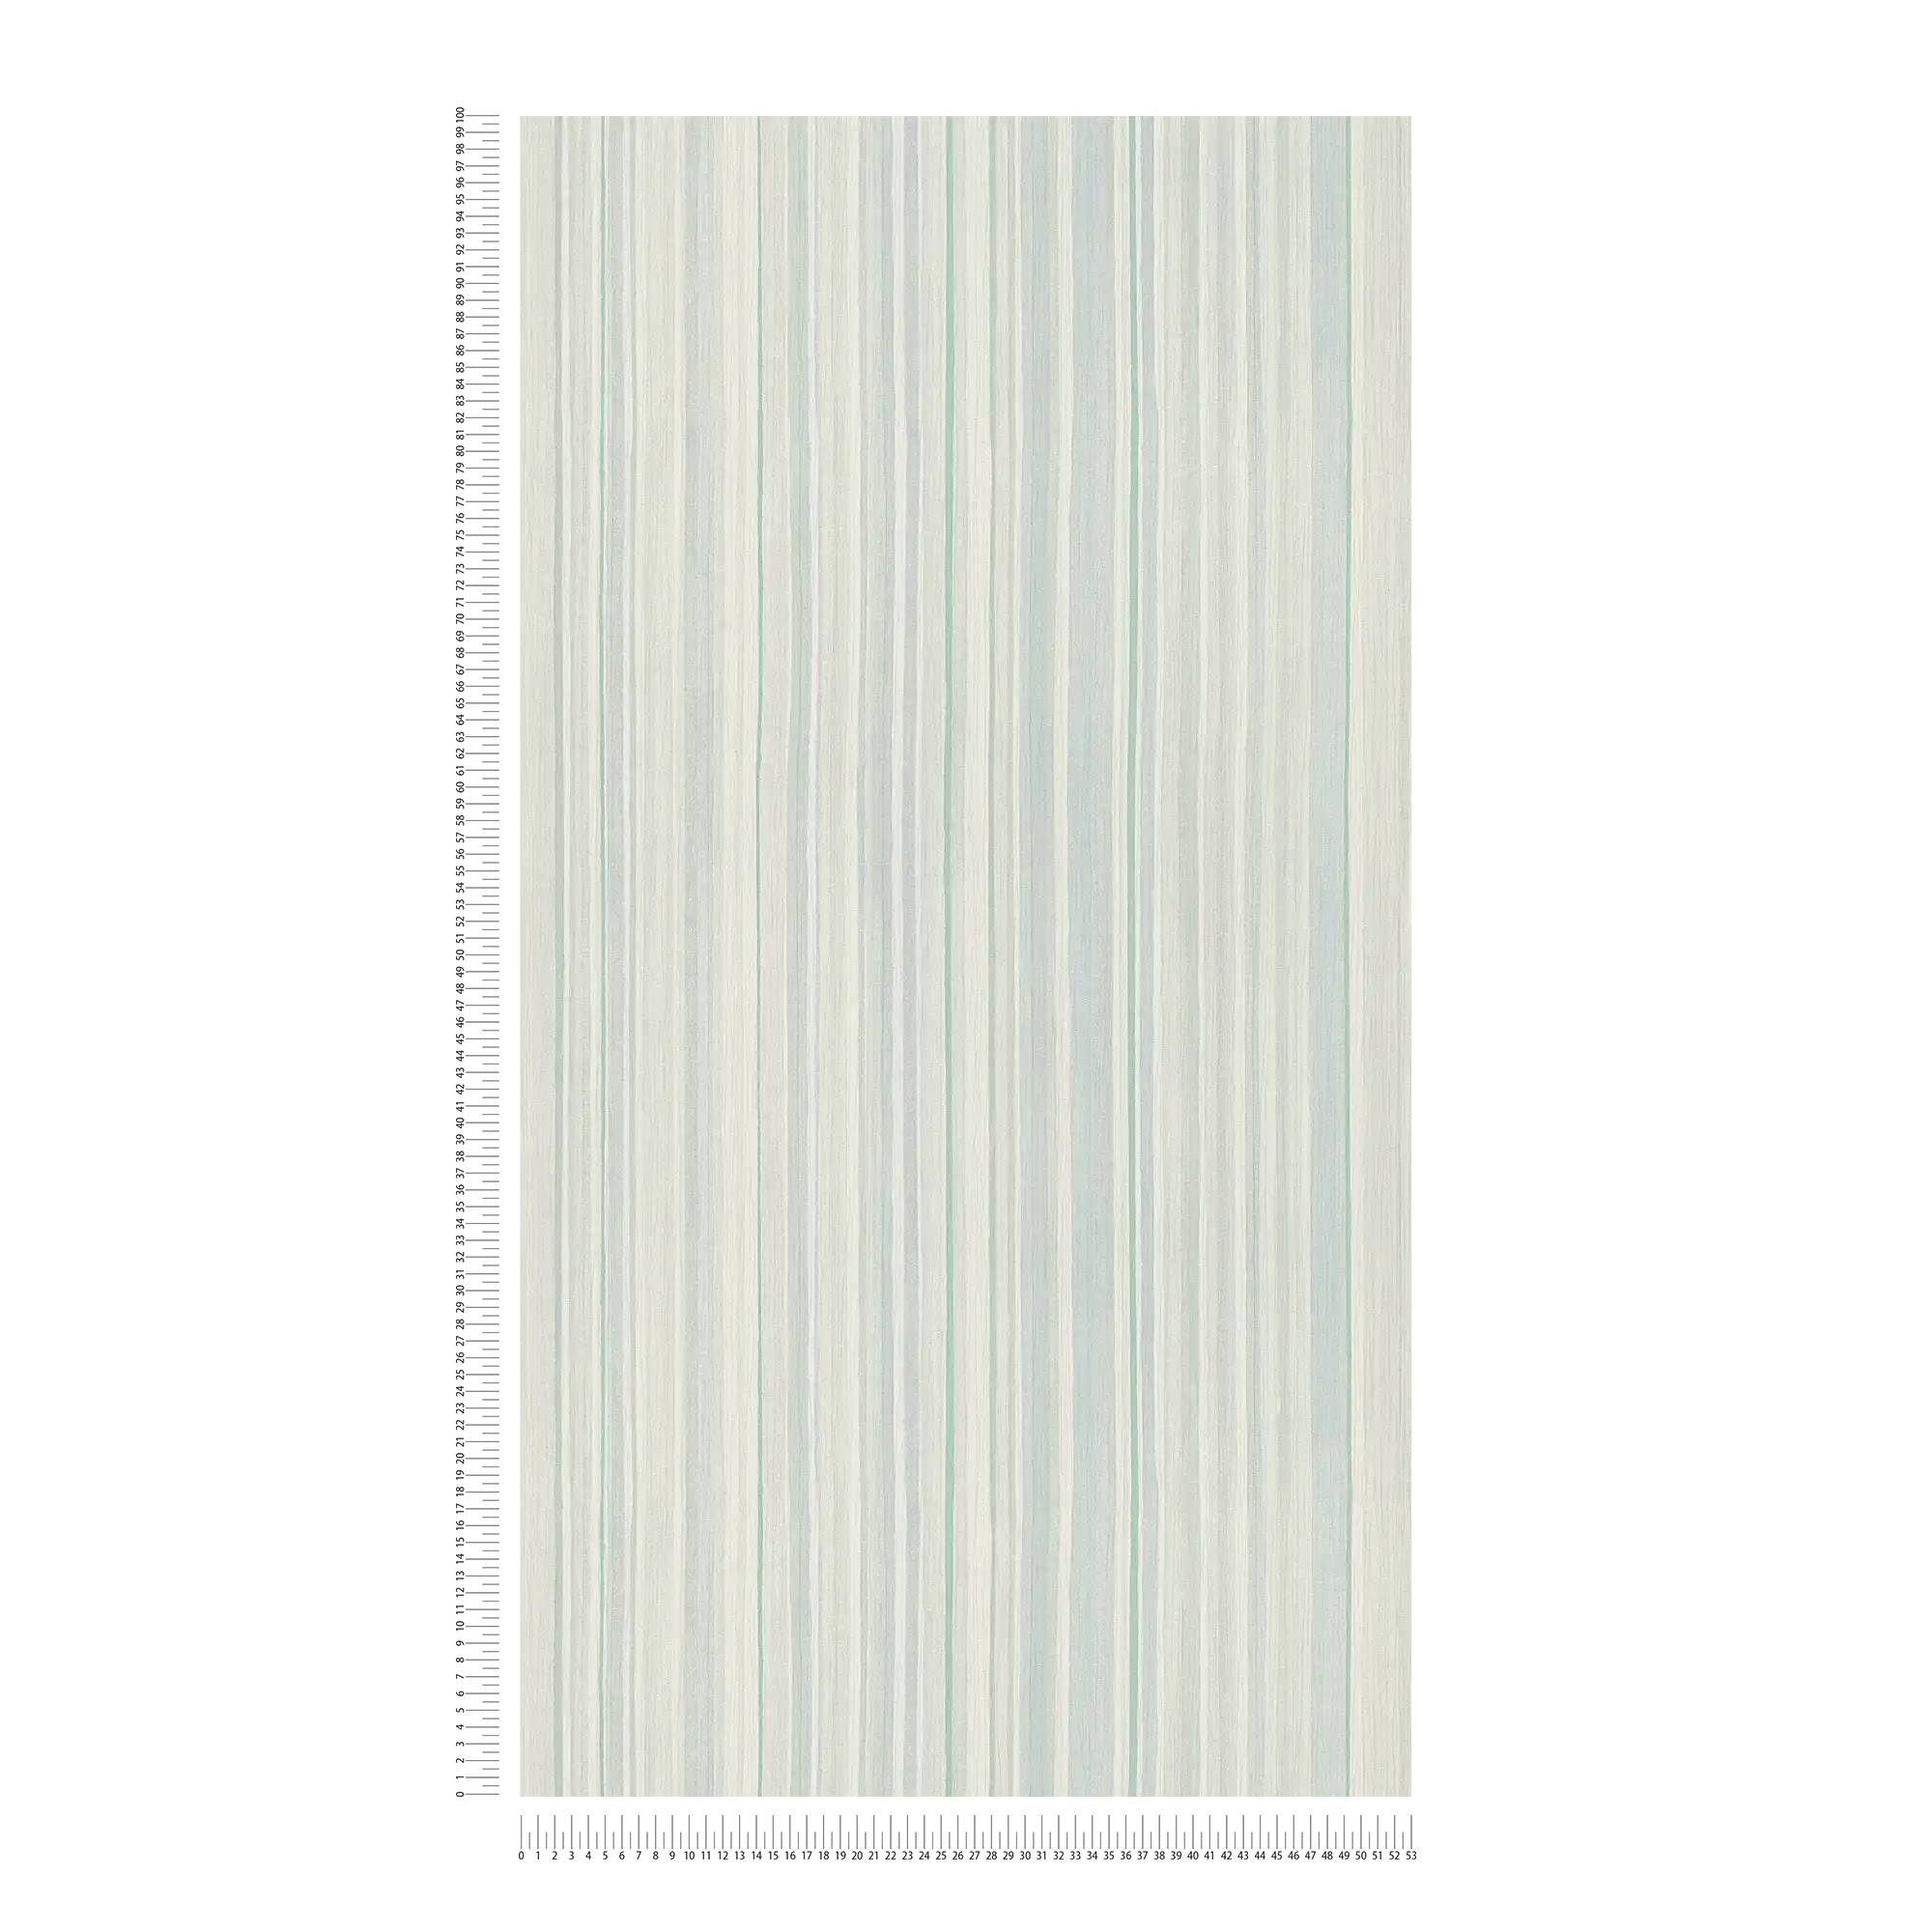             Gestreifte Tapete mit Linienmuster – Blau, Grün, Grau
        